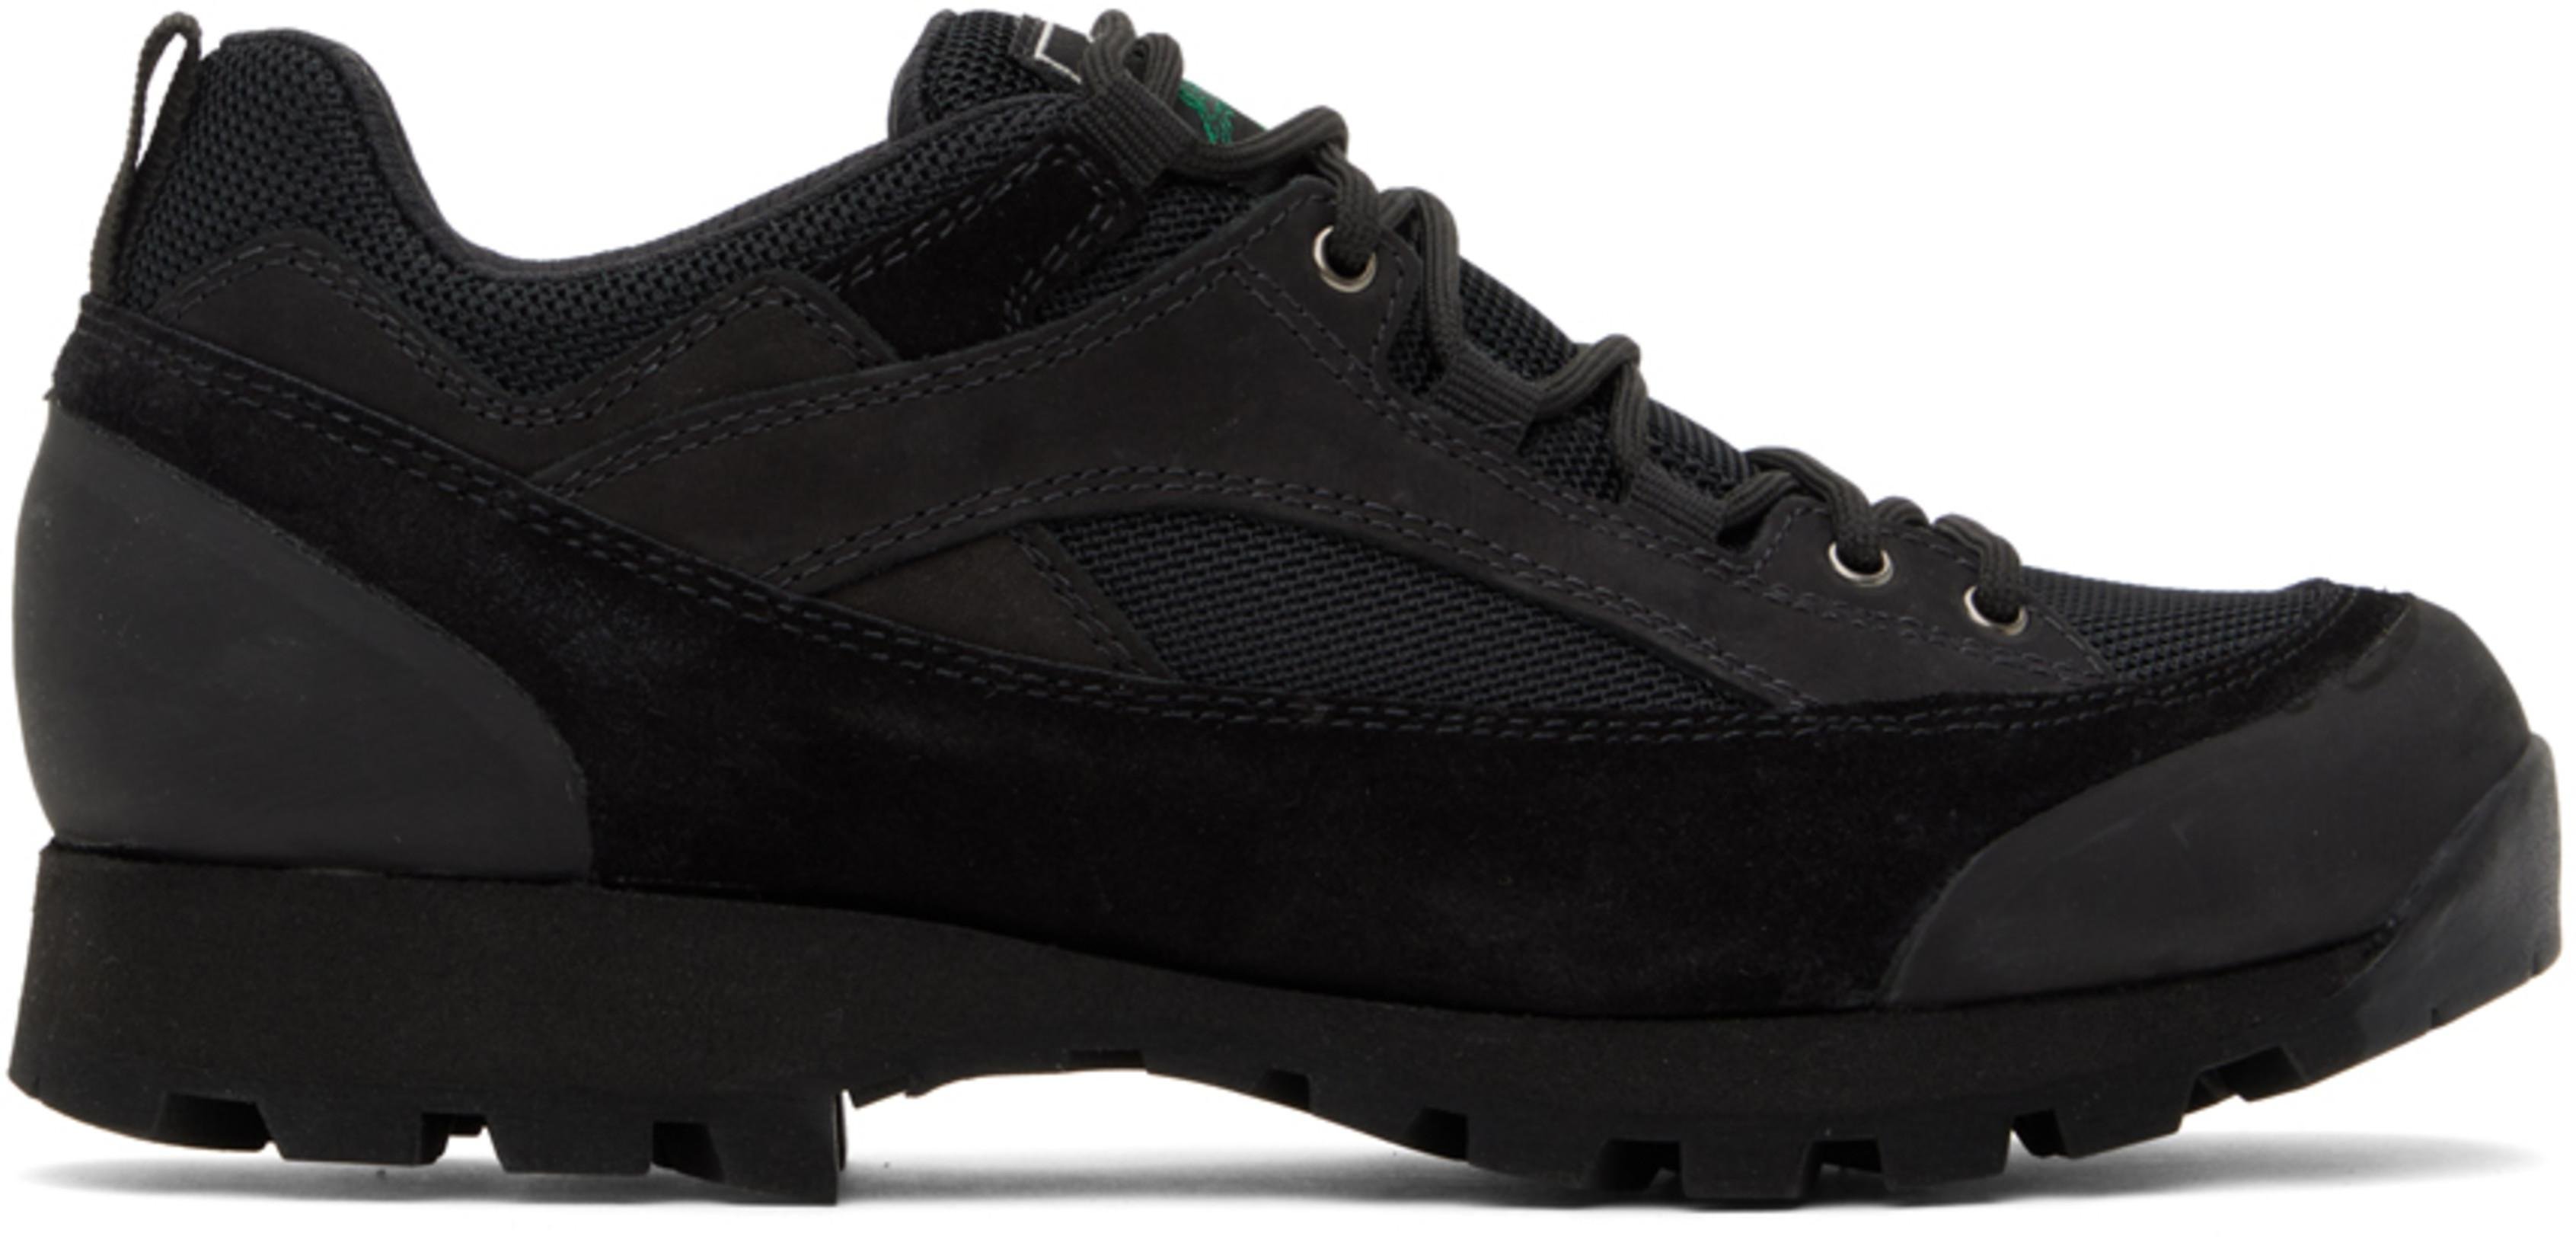 Black 'Grandpa Hiker' Sneakers by DIEMME